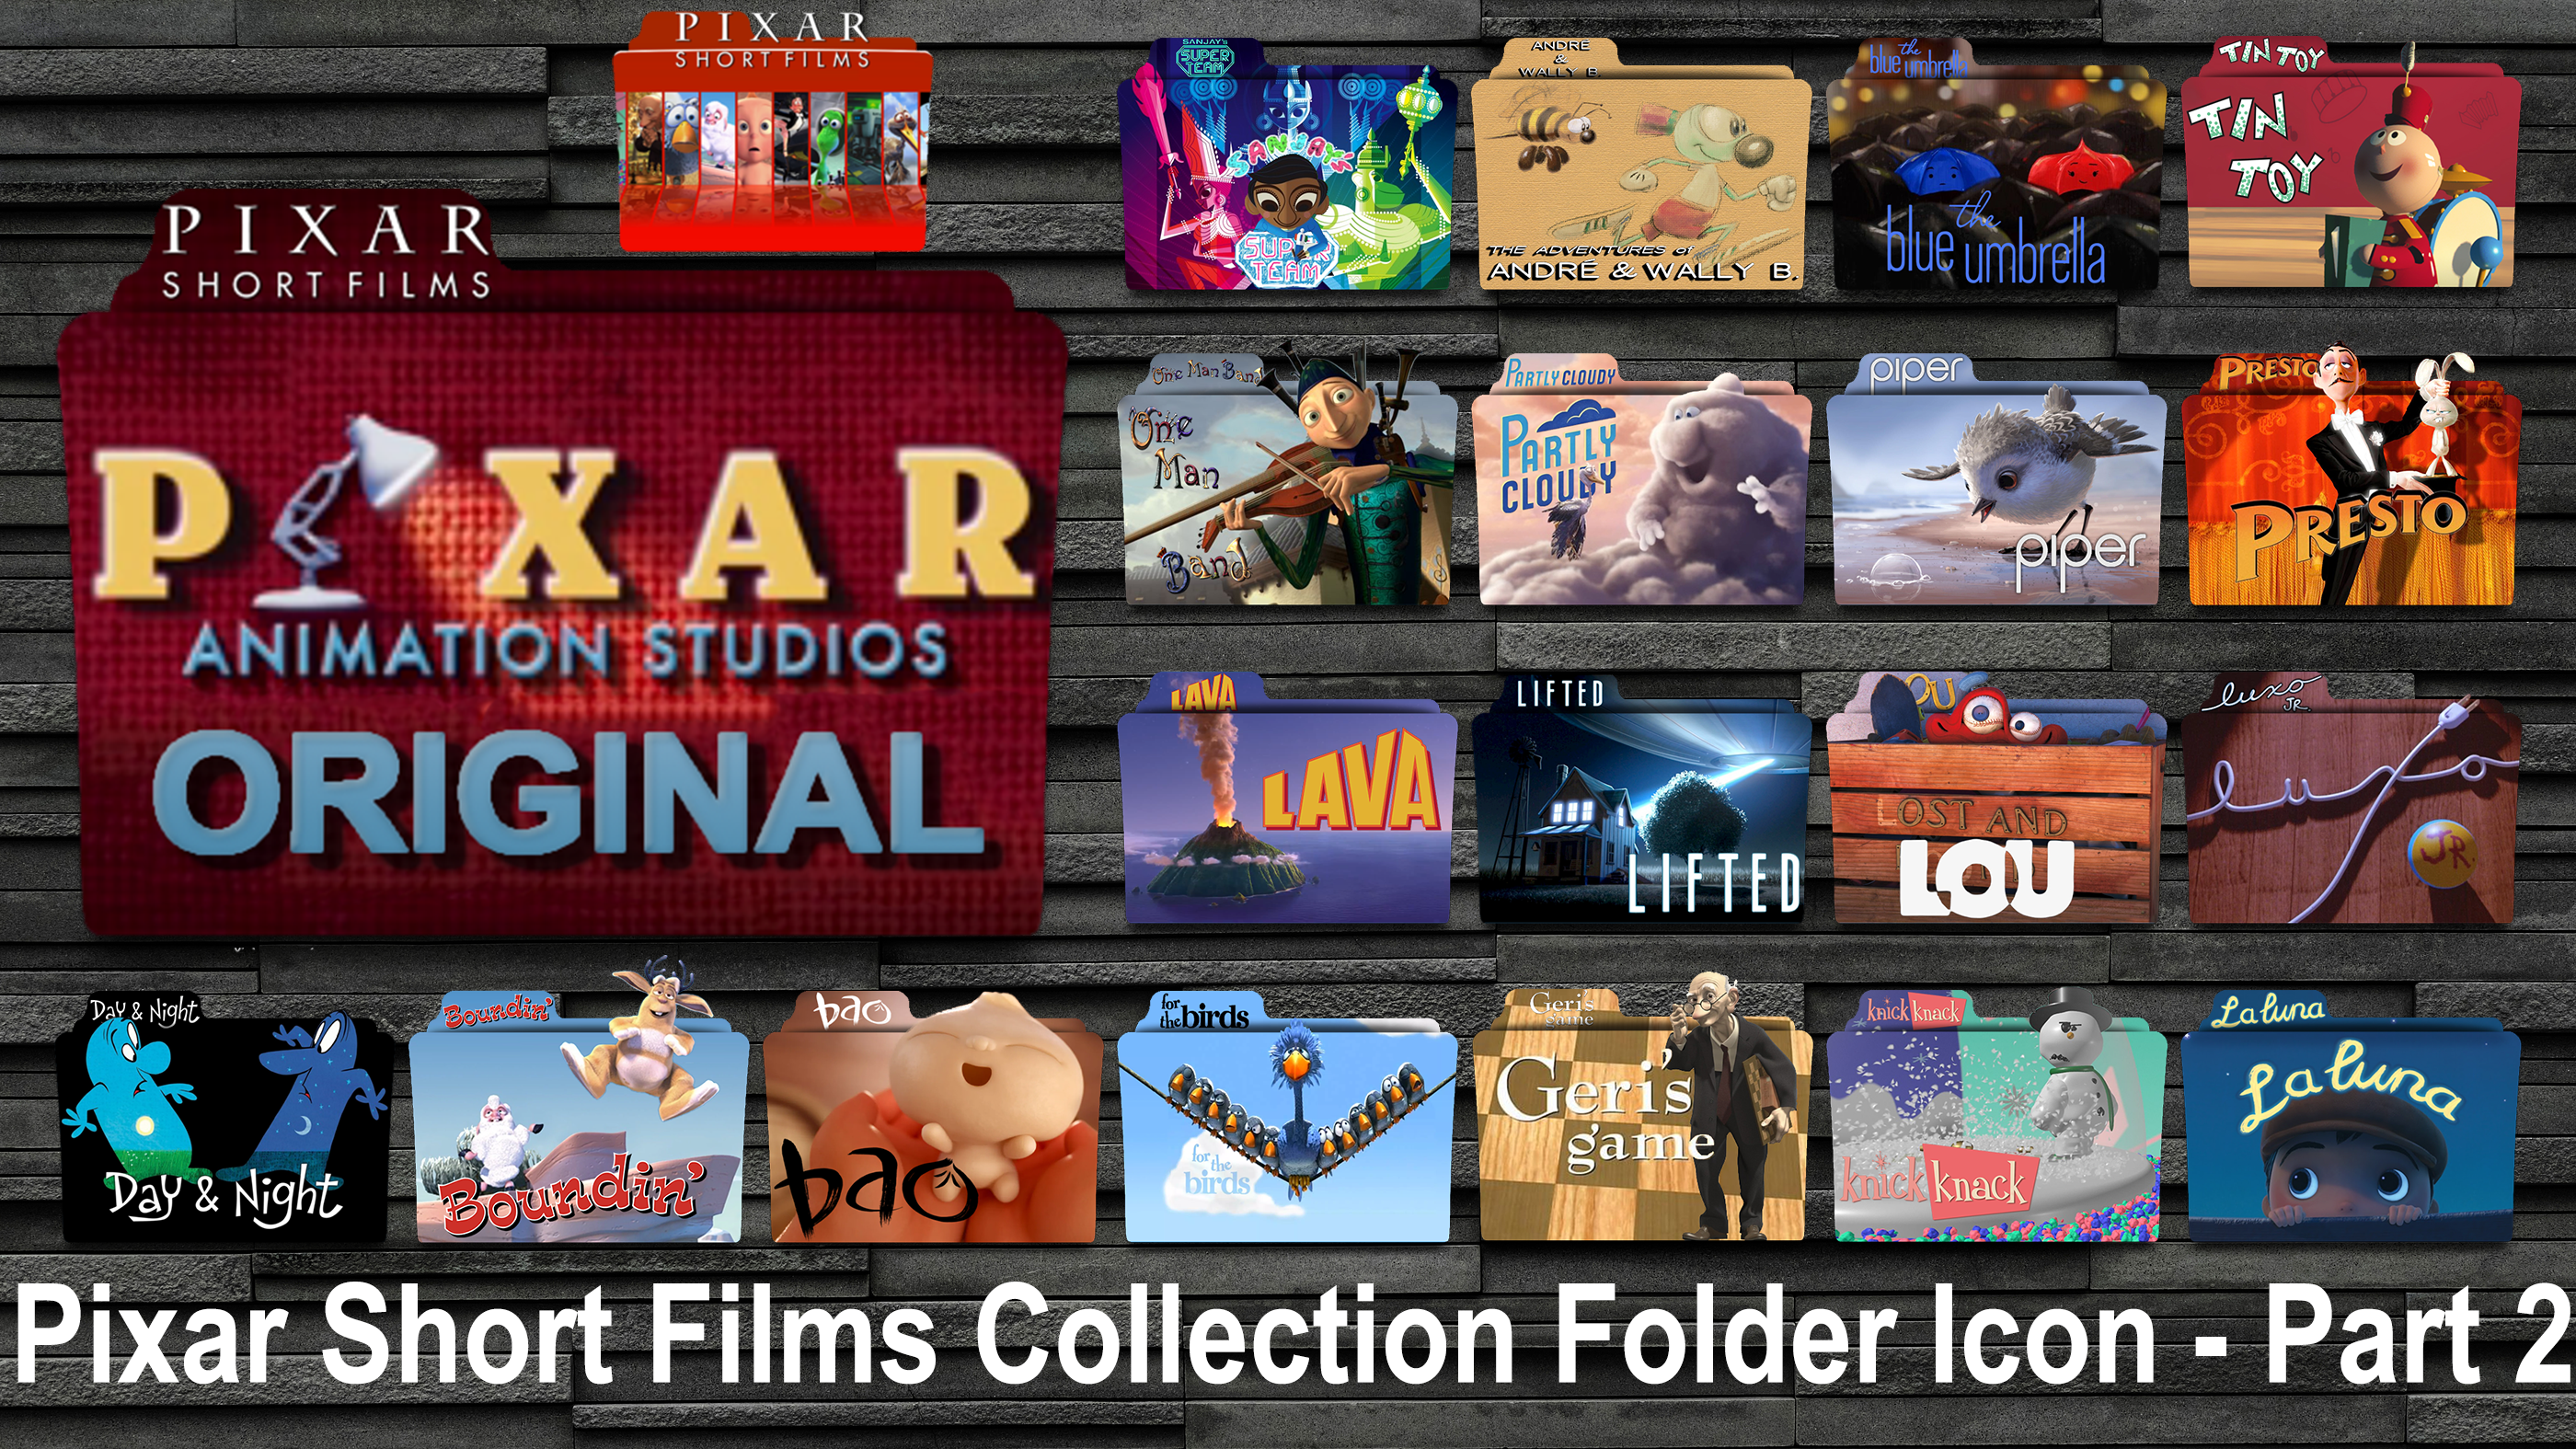 Short films collection. Pixar short films. Pixar short films collection 2.